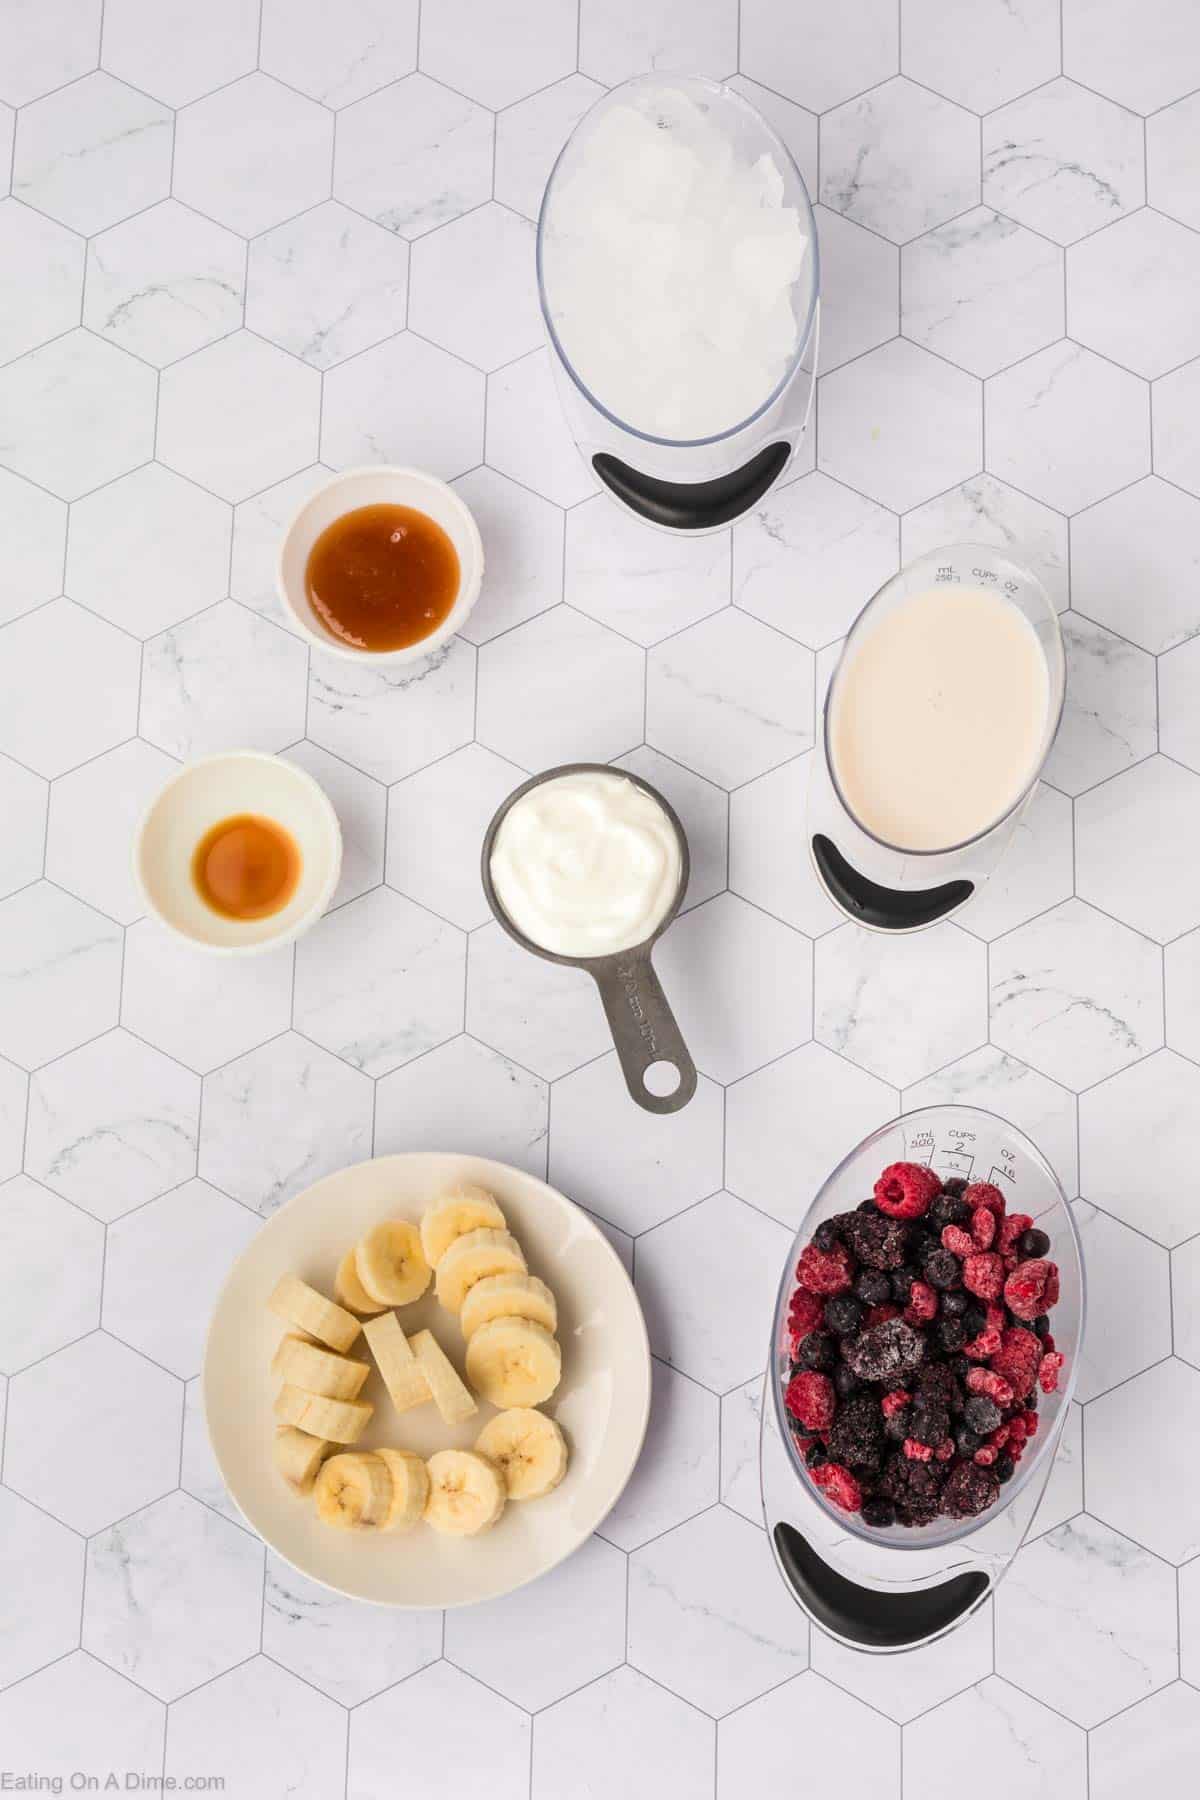 Mixed berries smoothie ingredients - ice, honey, vanilla, milk, yogurt, slice bananas, and frozen mixed berries